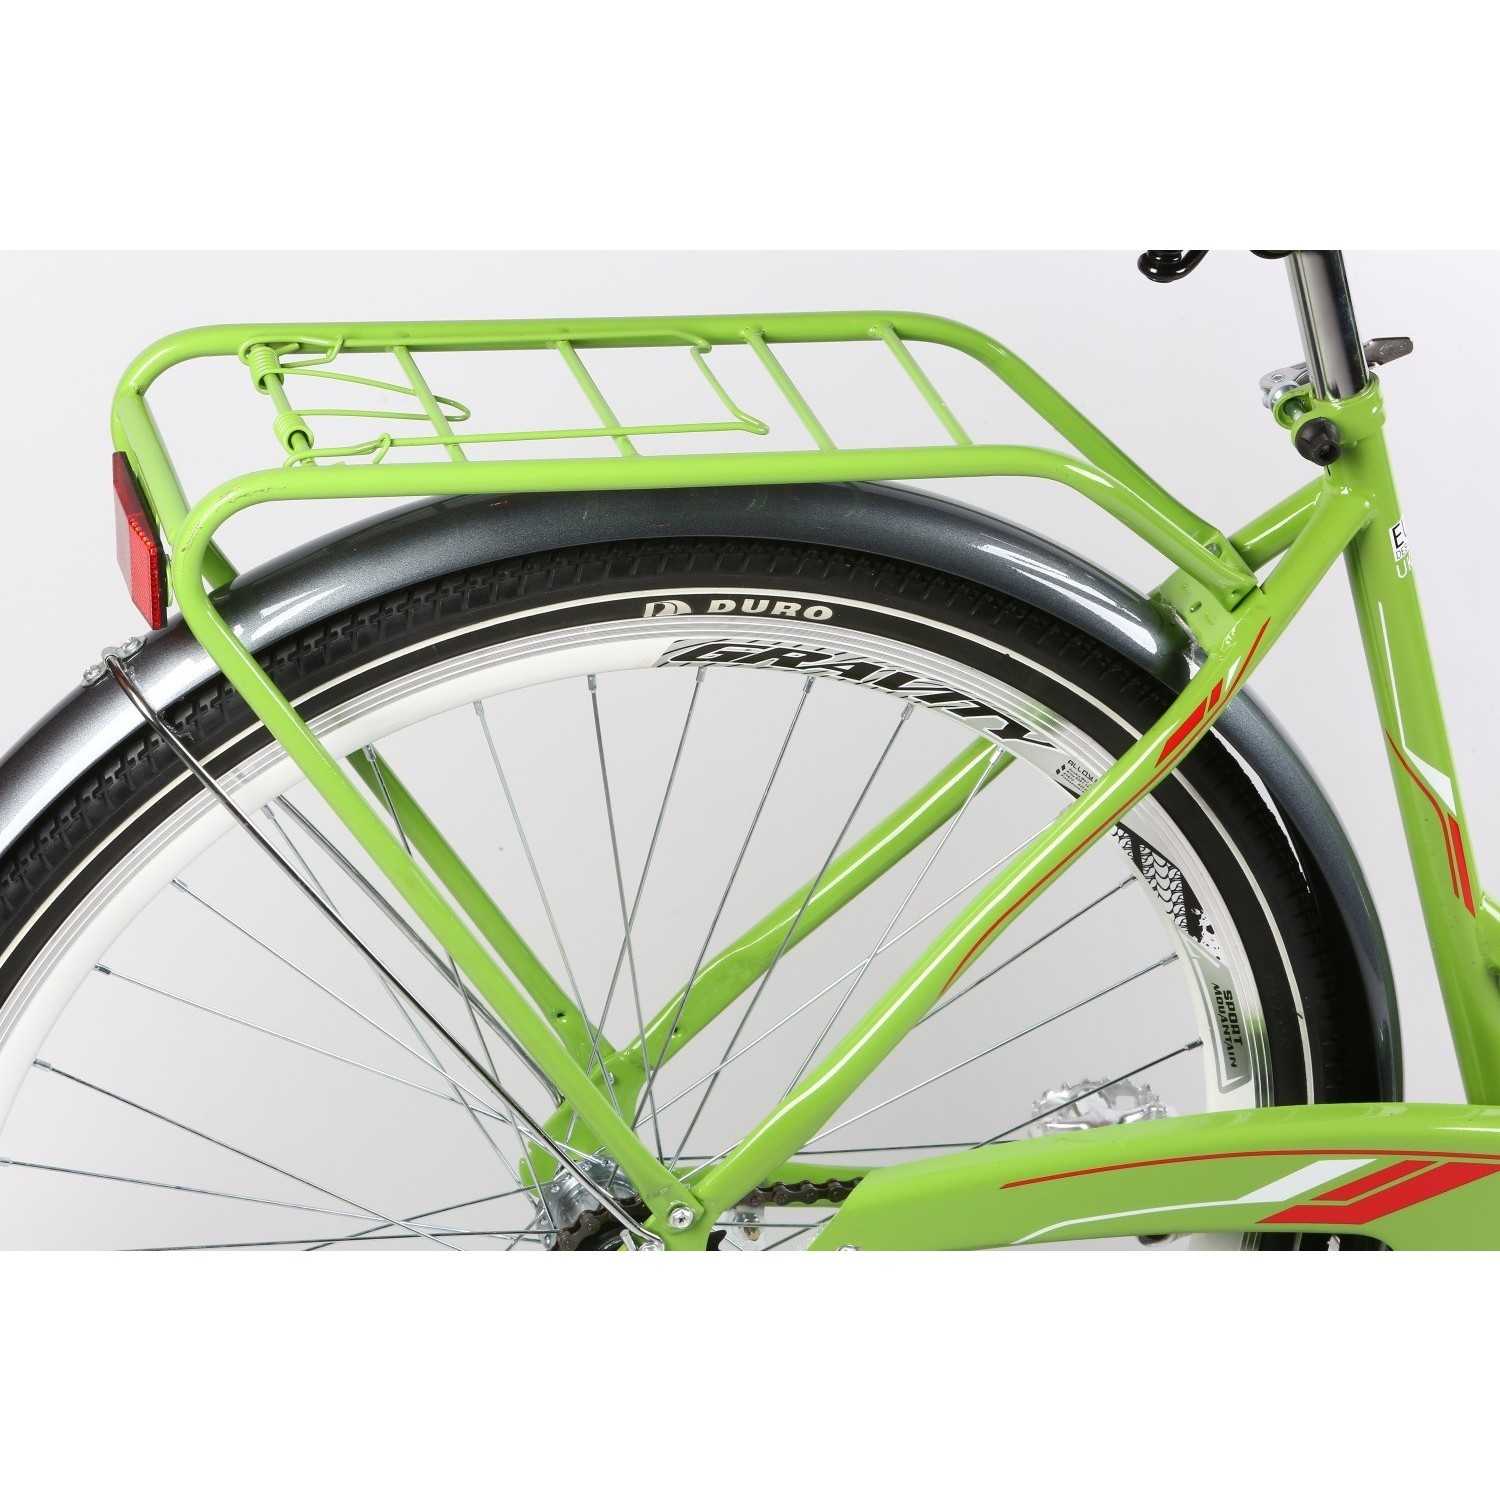 Обзор велосипедов Ардис лучшие модели и технологии бренда Краткая история производителя Ardis, отзывы о велосипедах